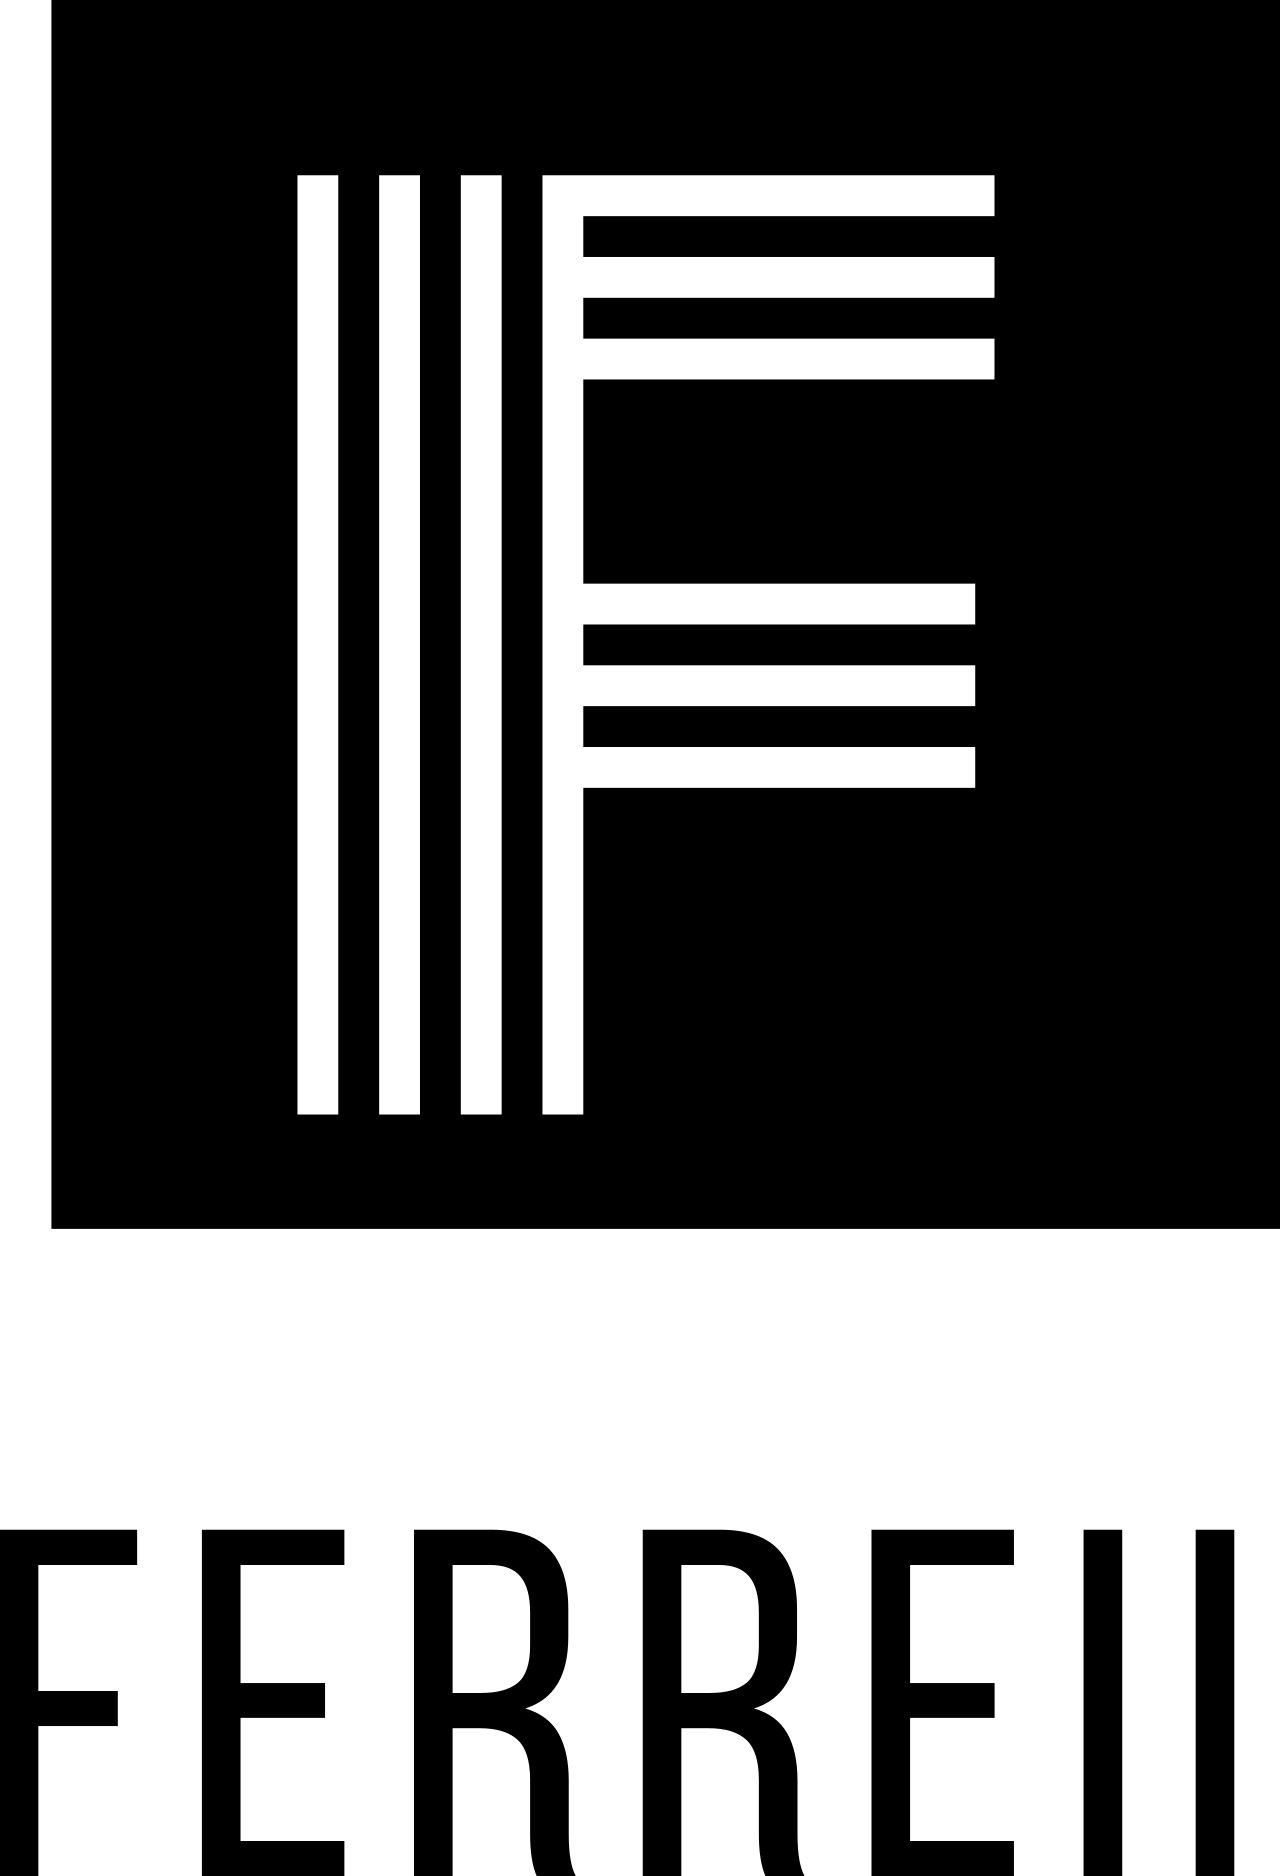 Ferreii's logo